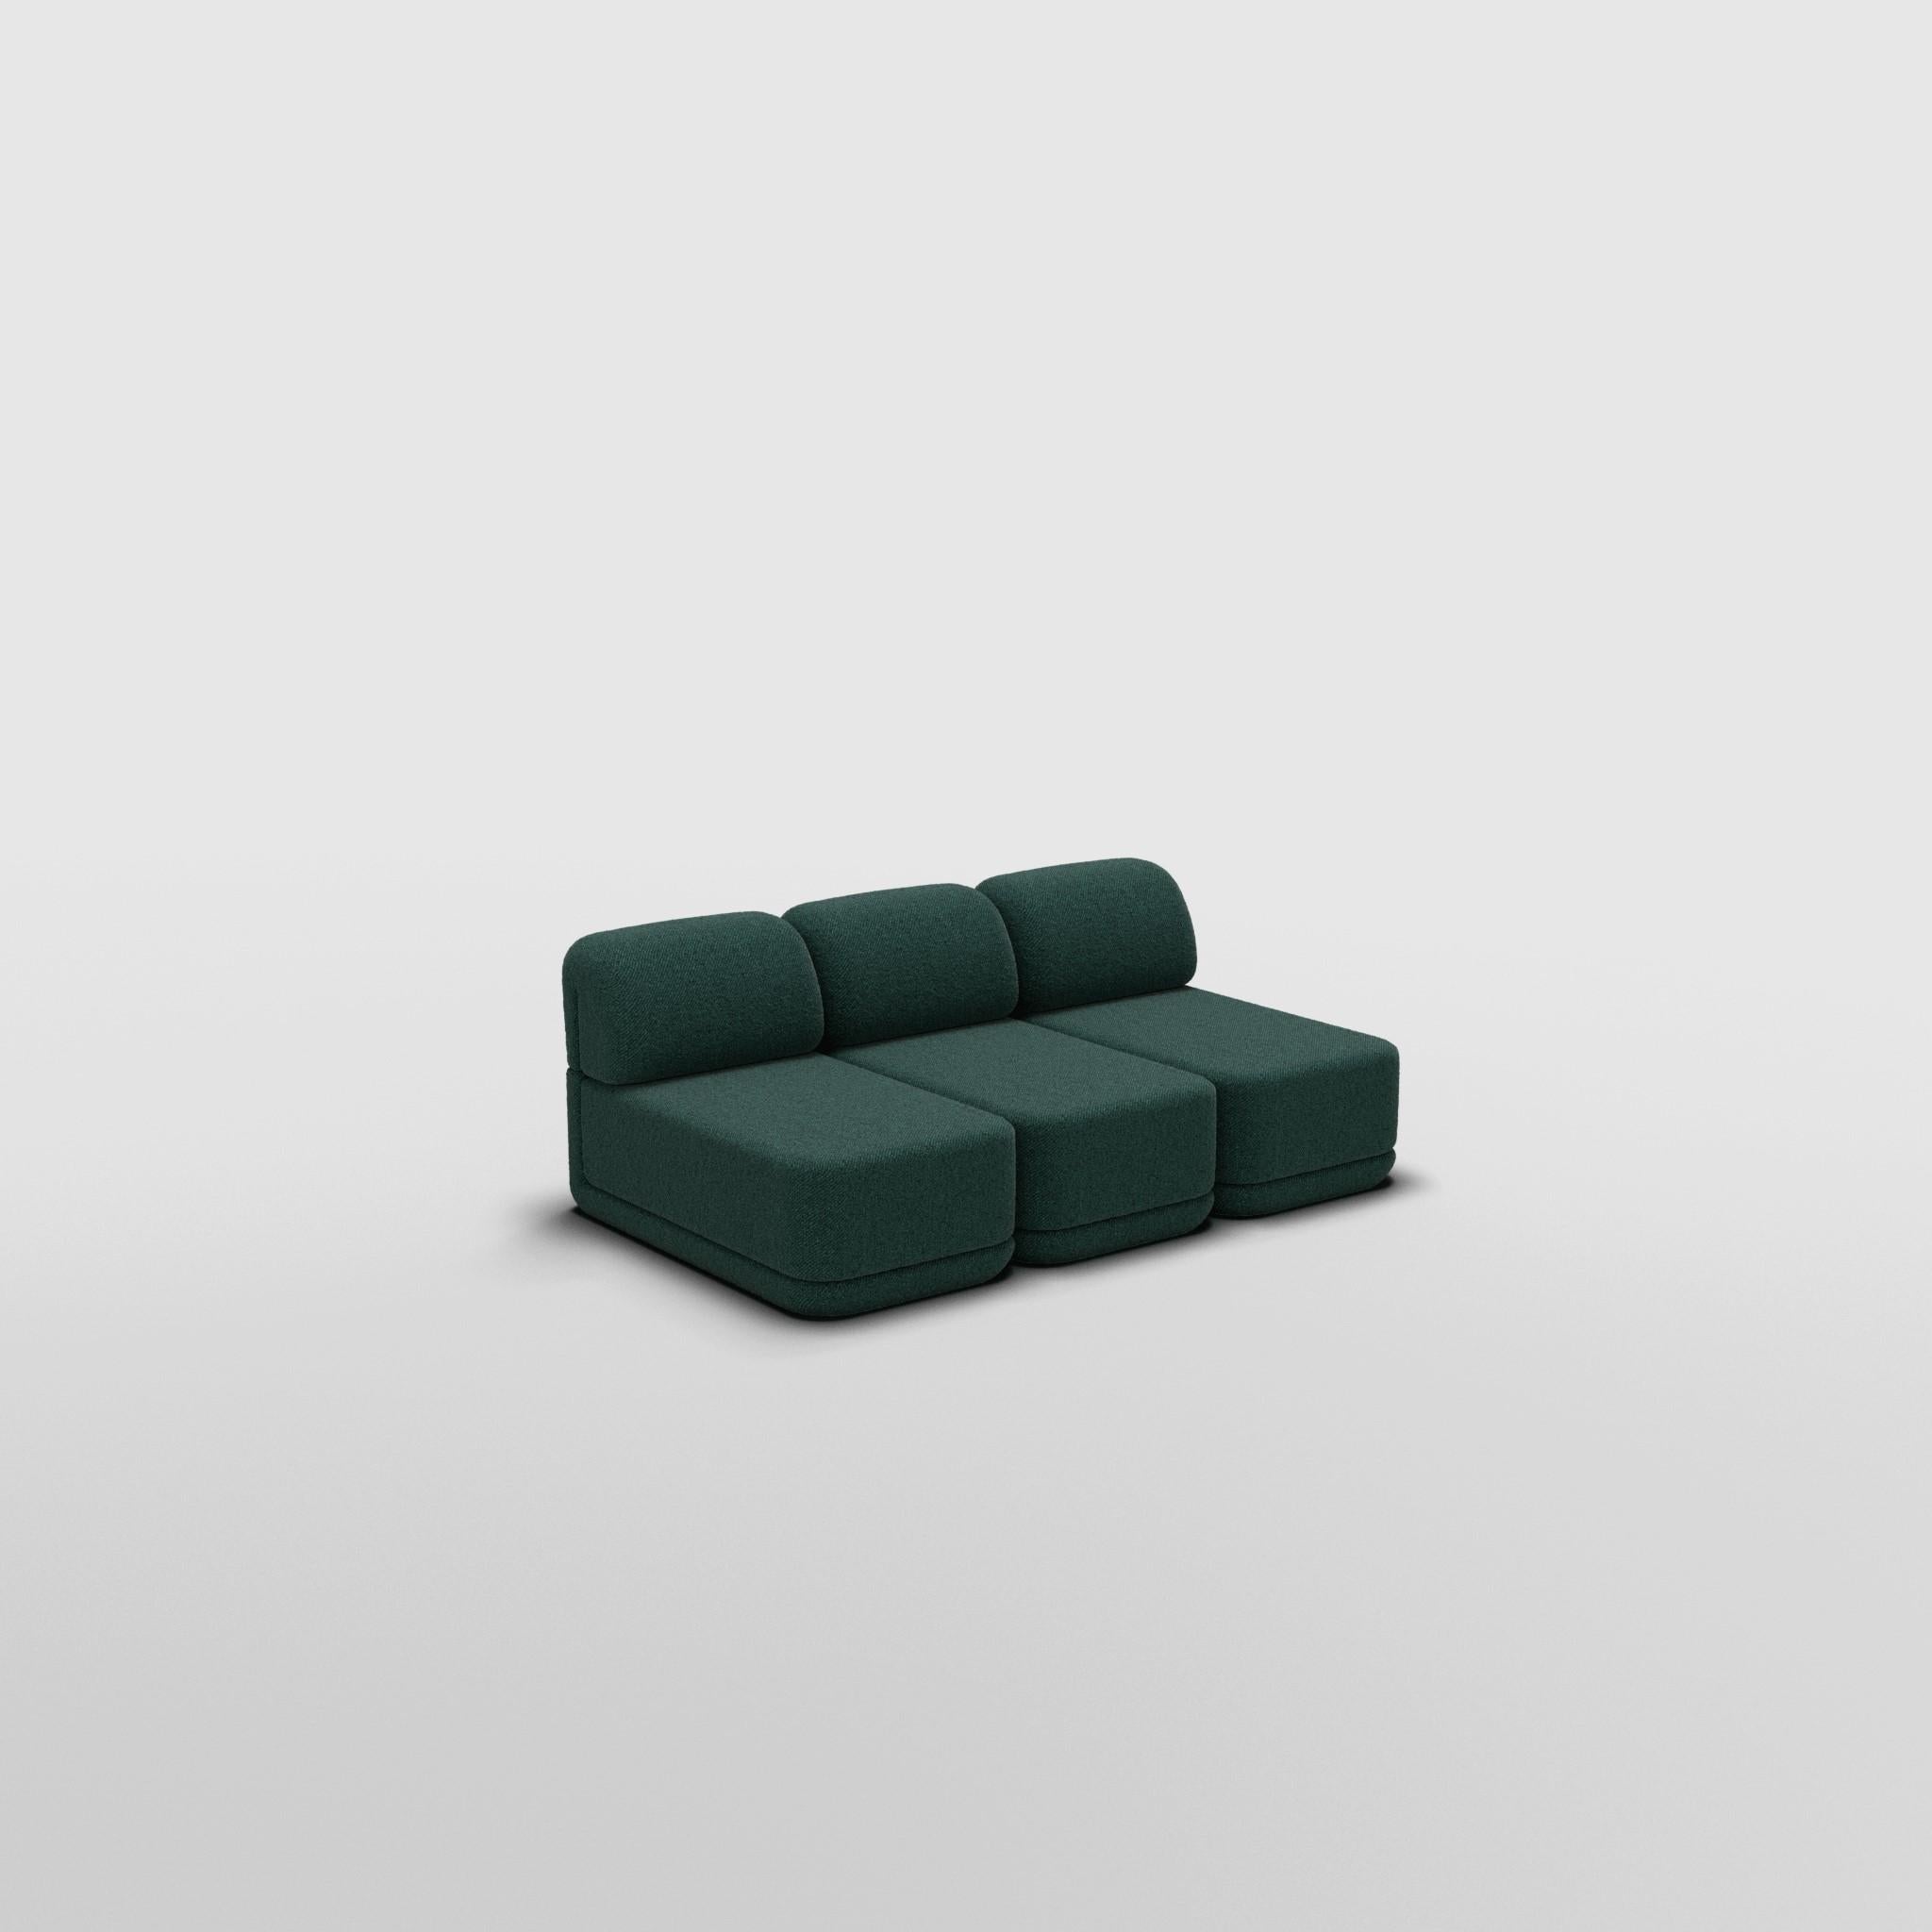 Slim Trio - Inspiré par le mobilier de luxe italien des années 70

Découvrez le canapé Cube, où l'art rencontre l'adaptabilité. Son design sculptural et son confort personnalisable créent des possibilités infinies pour votre espace de vie. Faites